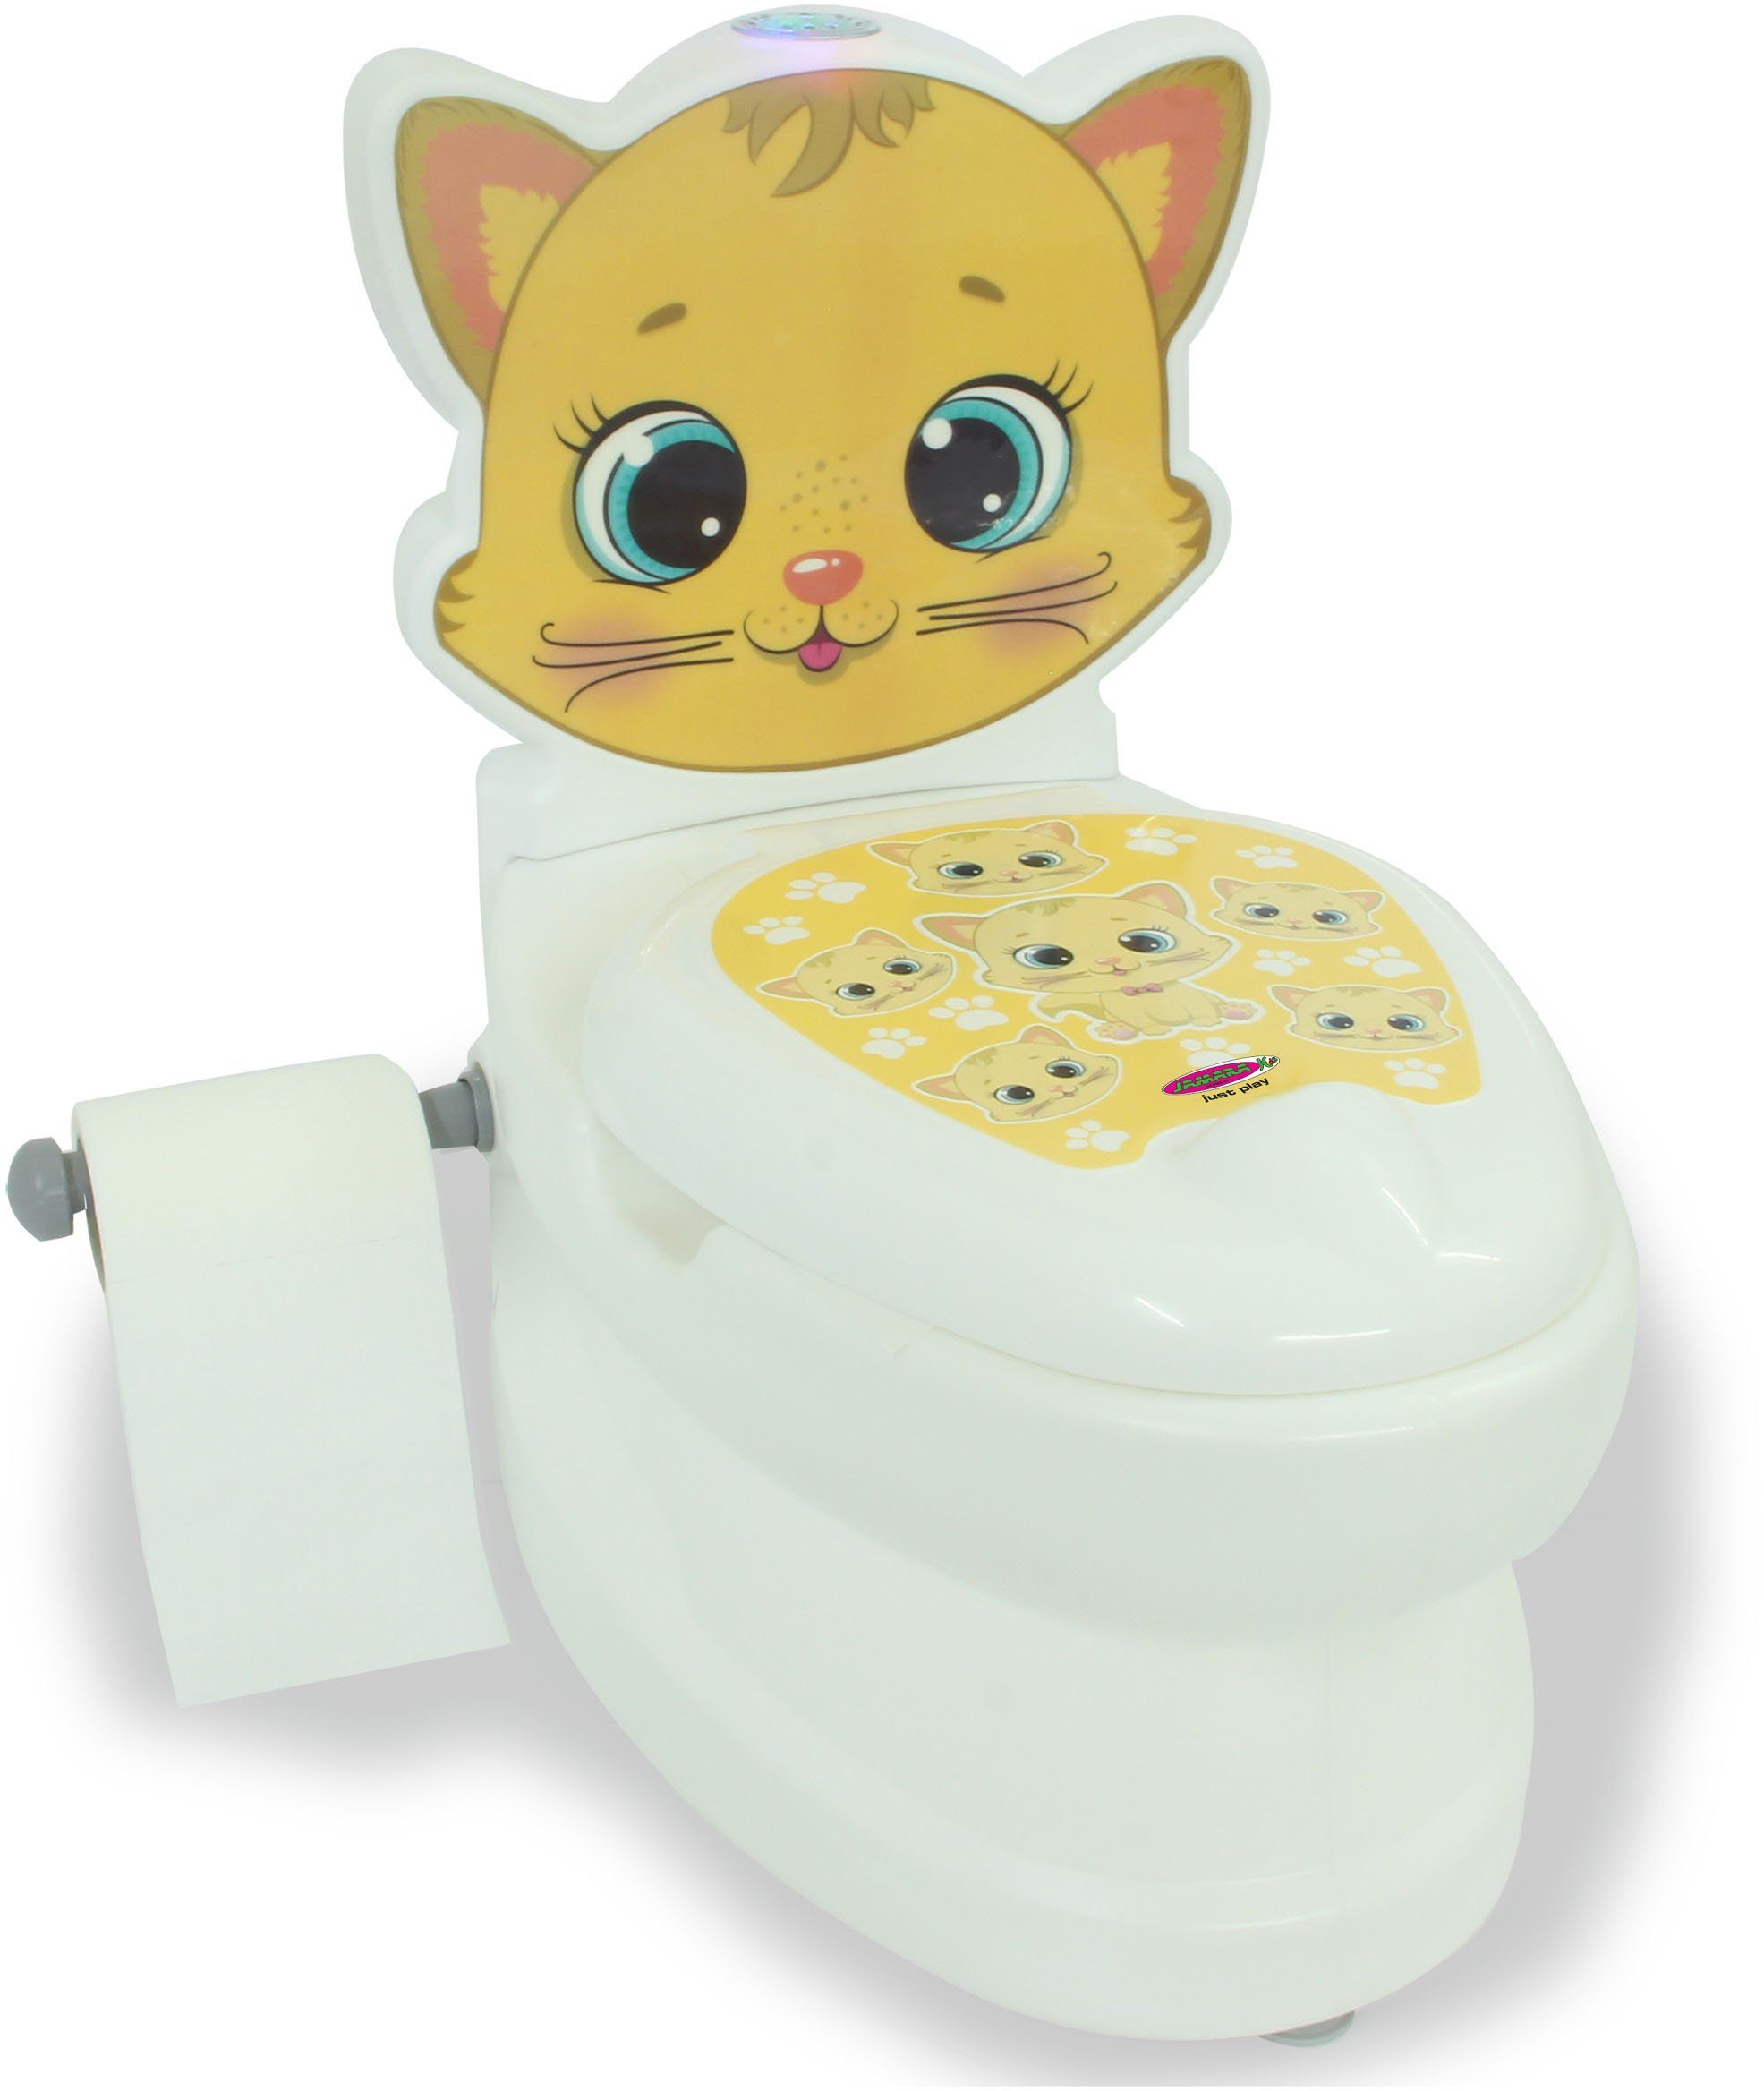 Toilette, Spülsound Toilettentrainer kleine Jamara Toilettenpapierhalter Meine und Katze, mit